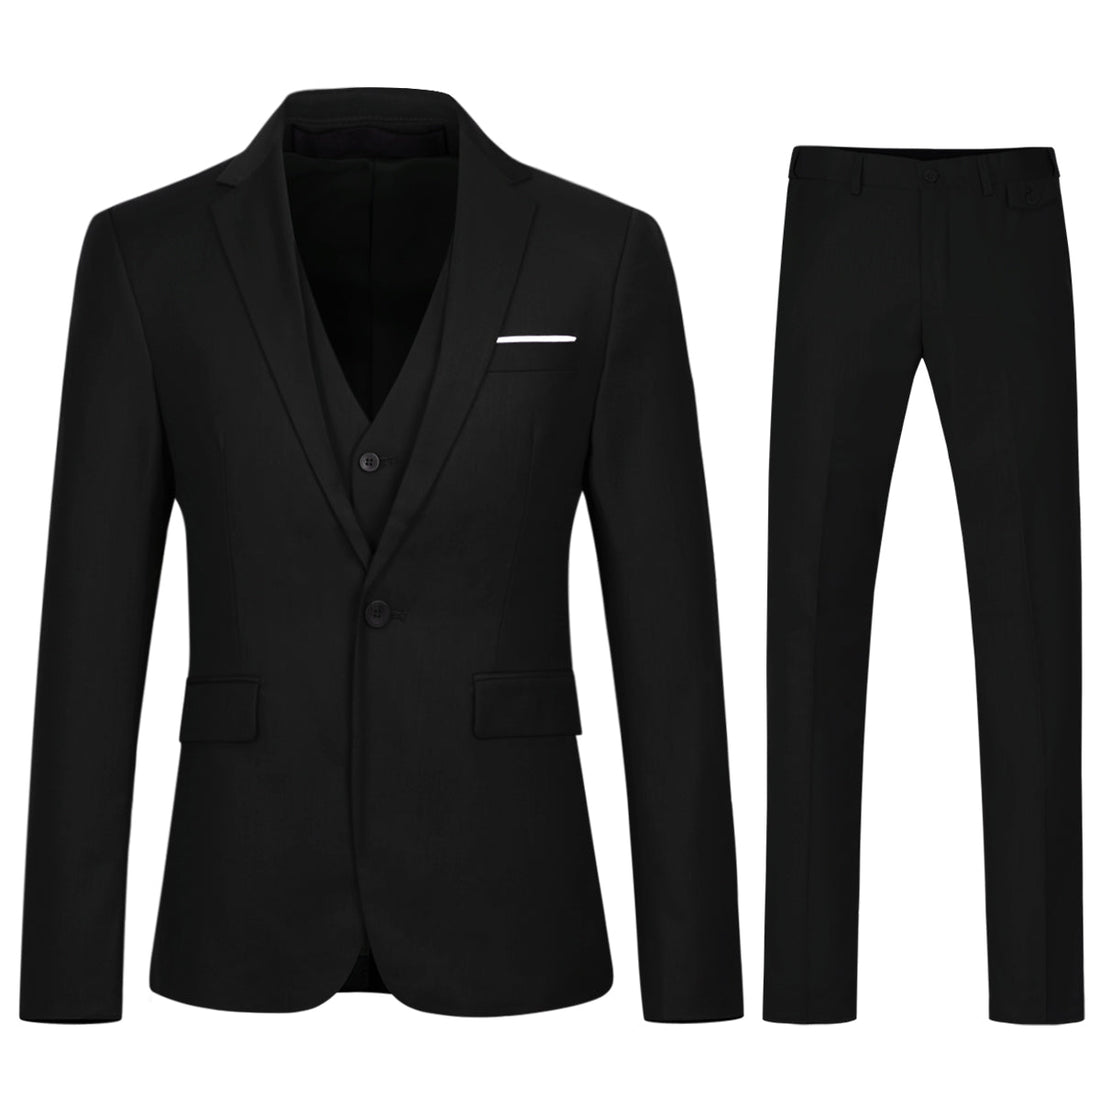 3-Piece One Button Lapel Collar Black Suit